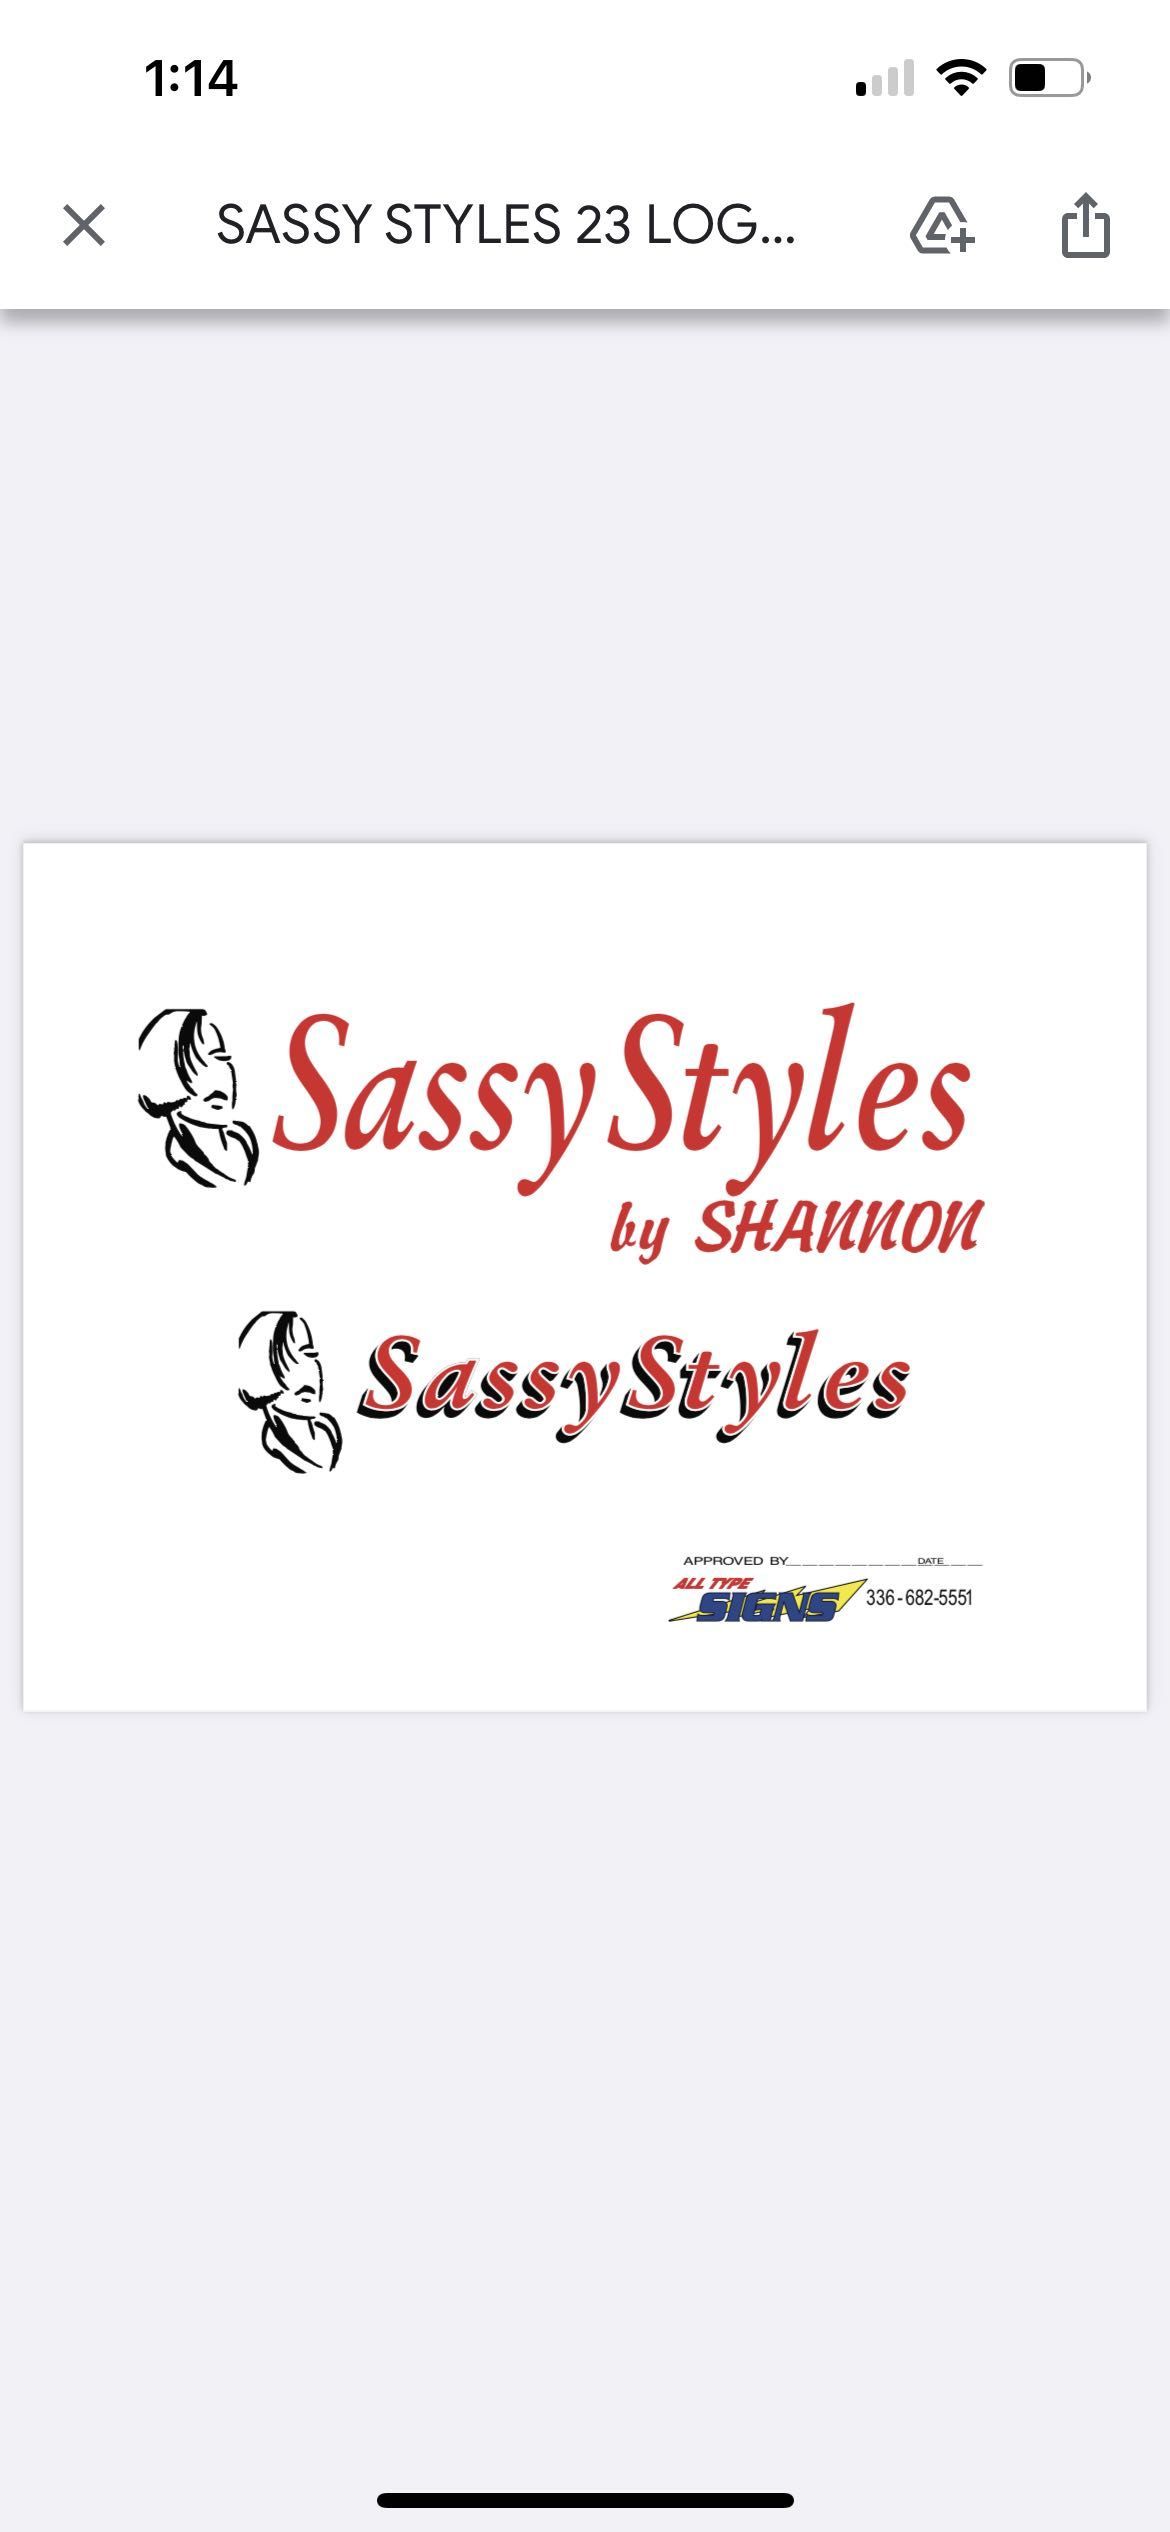 Sassy Pop Up Express, 840 E 25th St, Winston-Salem, 27105